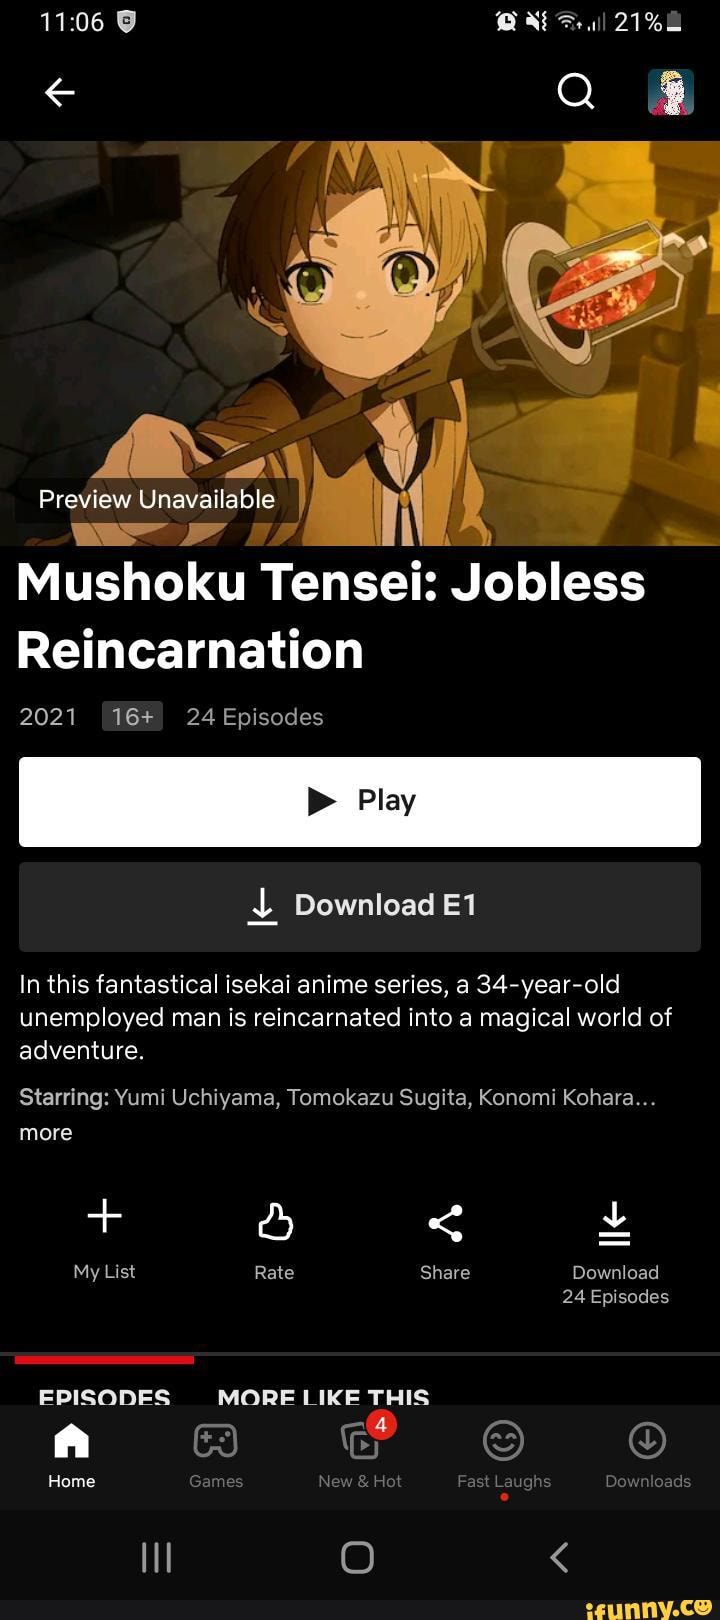 Mushoku Tensei: Jobless Reincarnation Anime Prepares for Adventure